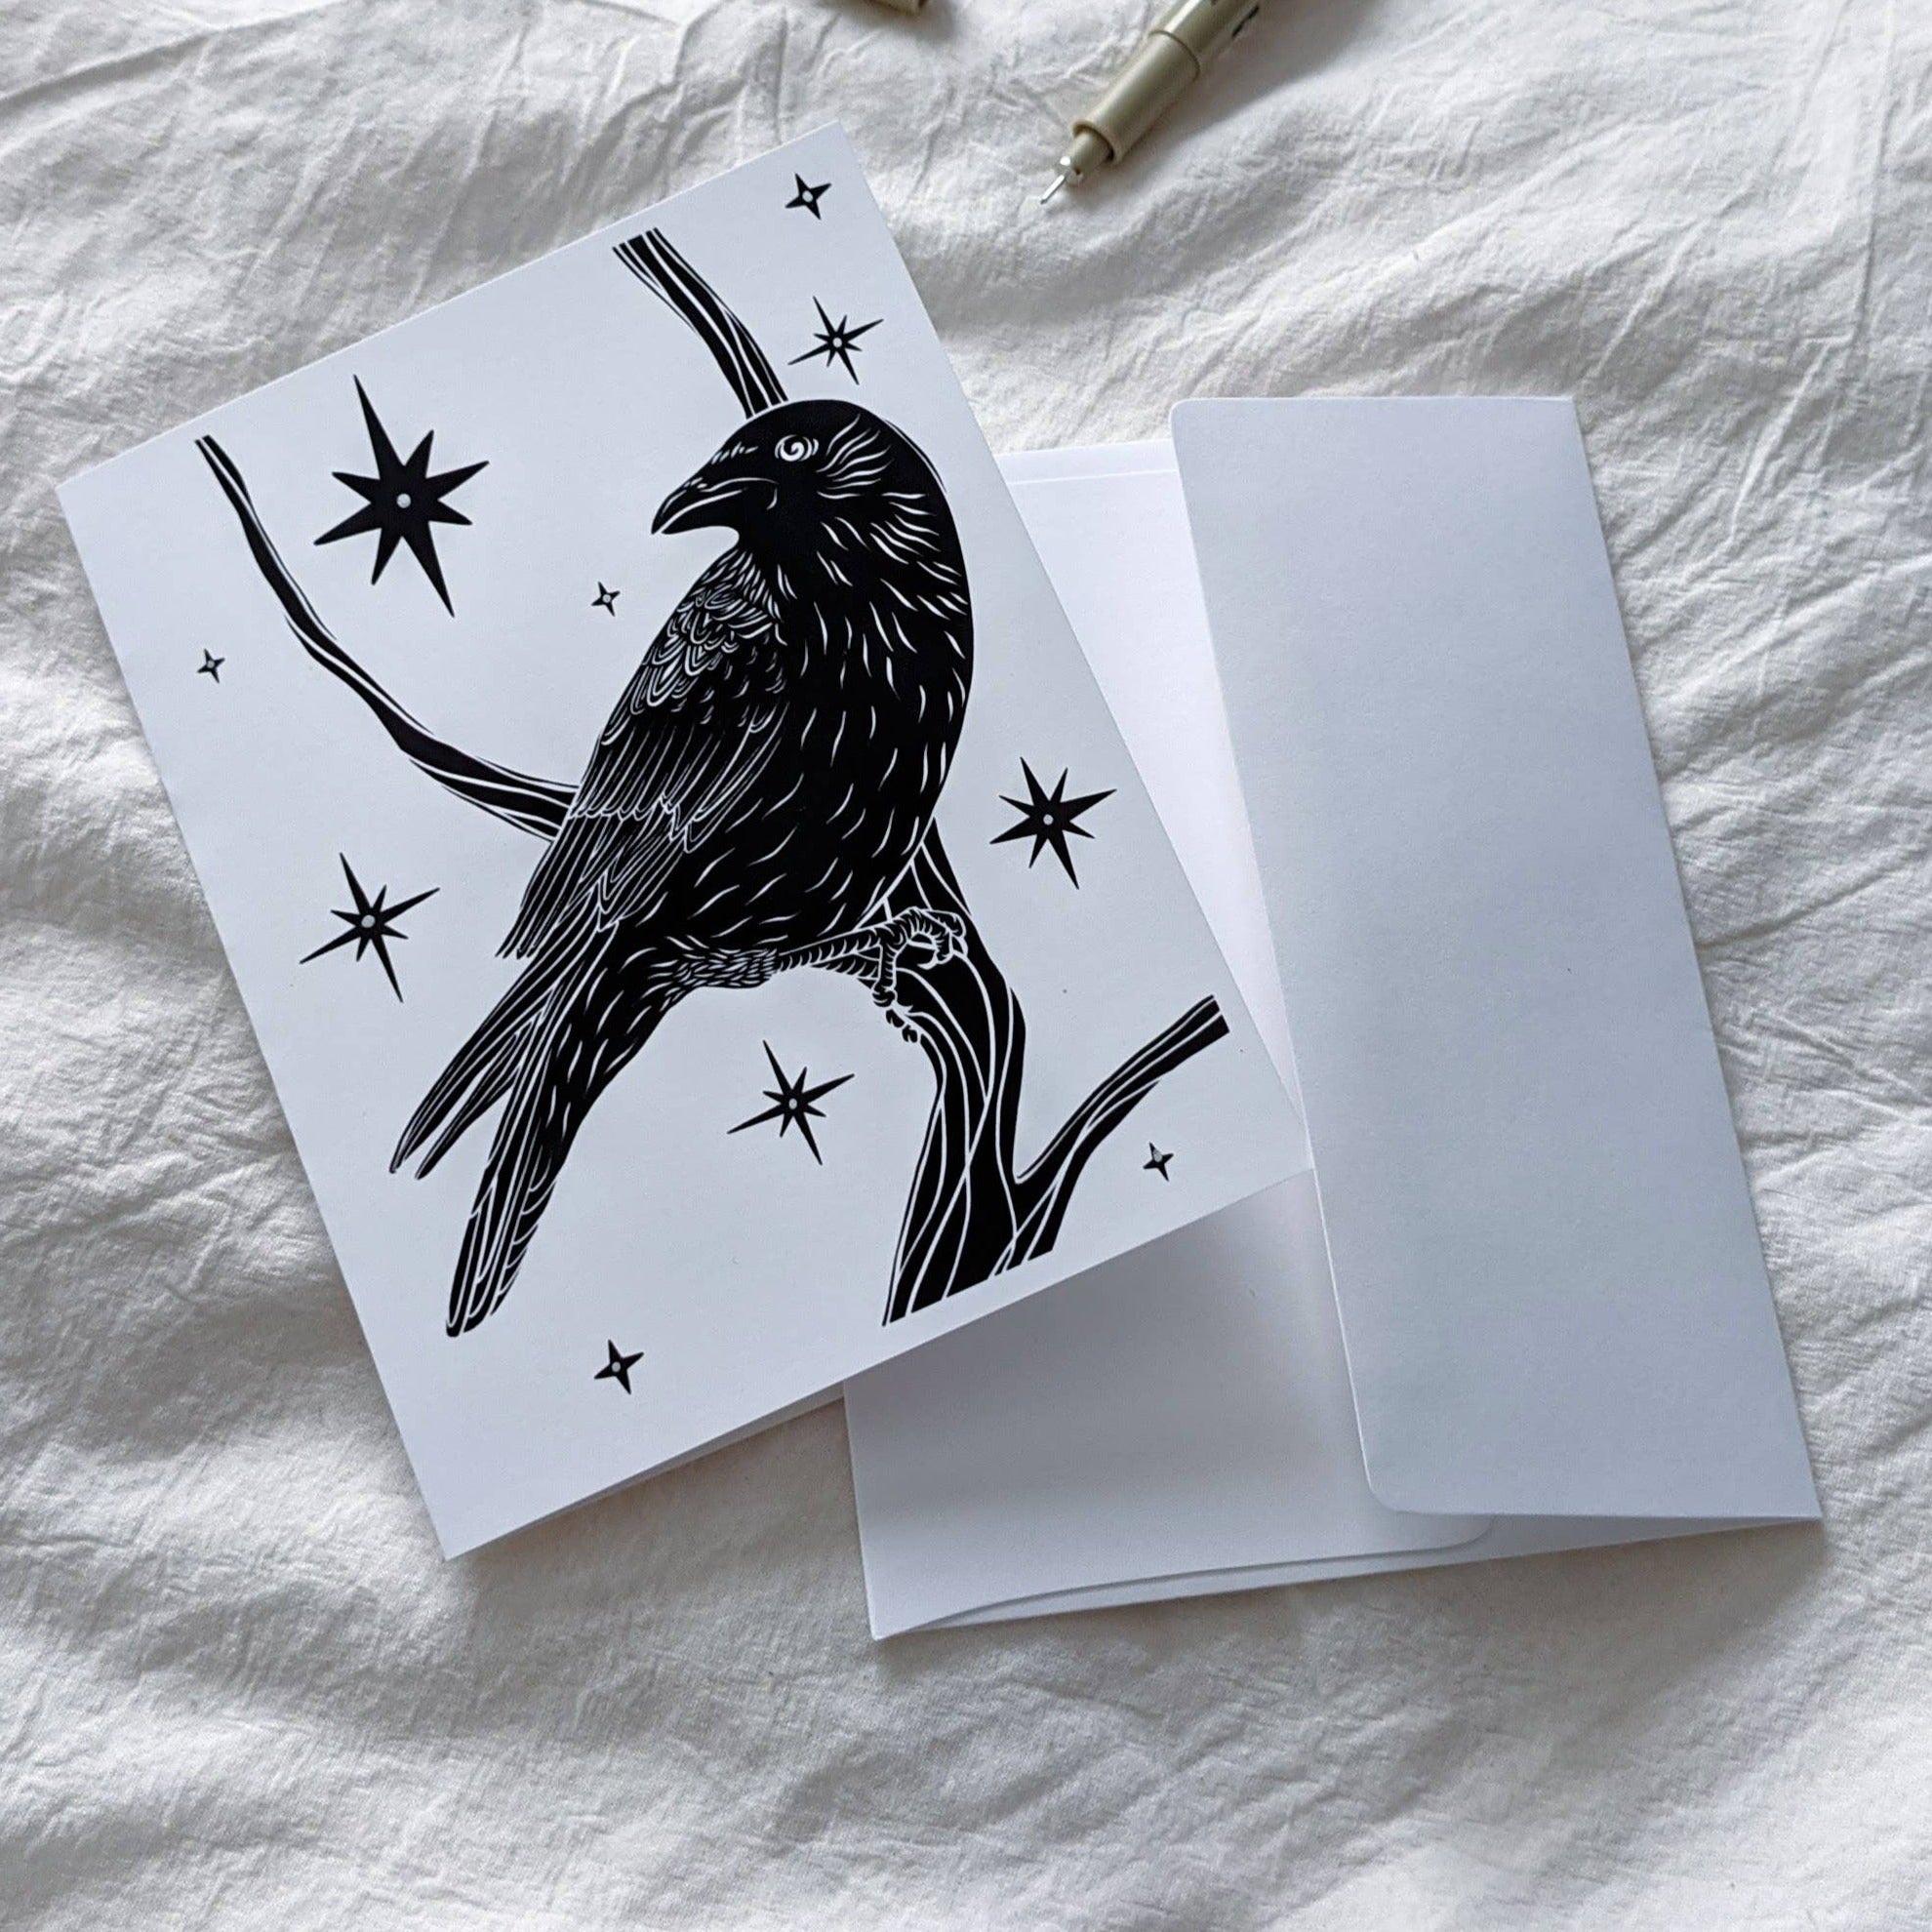 Celestial Crow Card